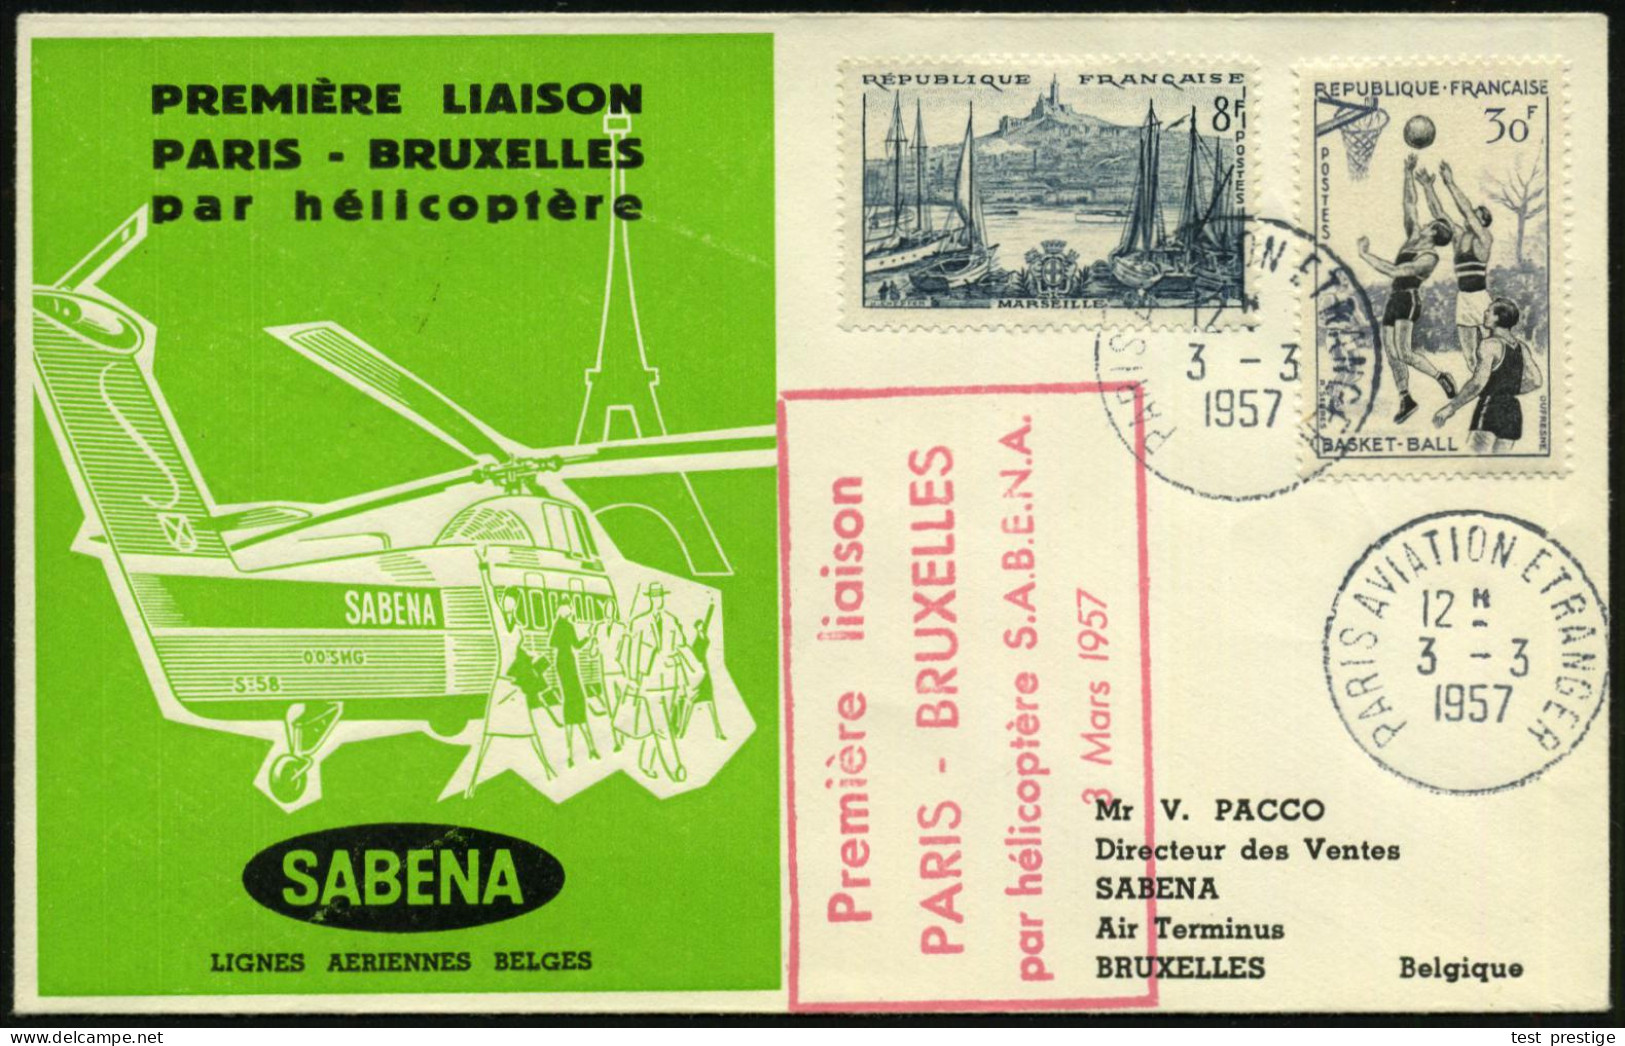 FRANKREICH 1957 (3.3.) Helikopter-SU: PREMIERE LIAISON/ PARIS - BRUXELLES (SABENA) Rs. Helikopter-AS, 1K: PARIS AVIATION - Helicópteros